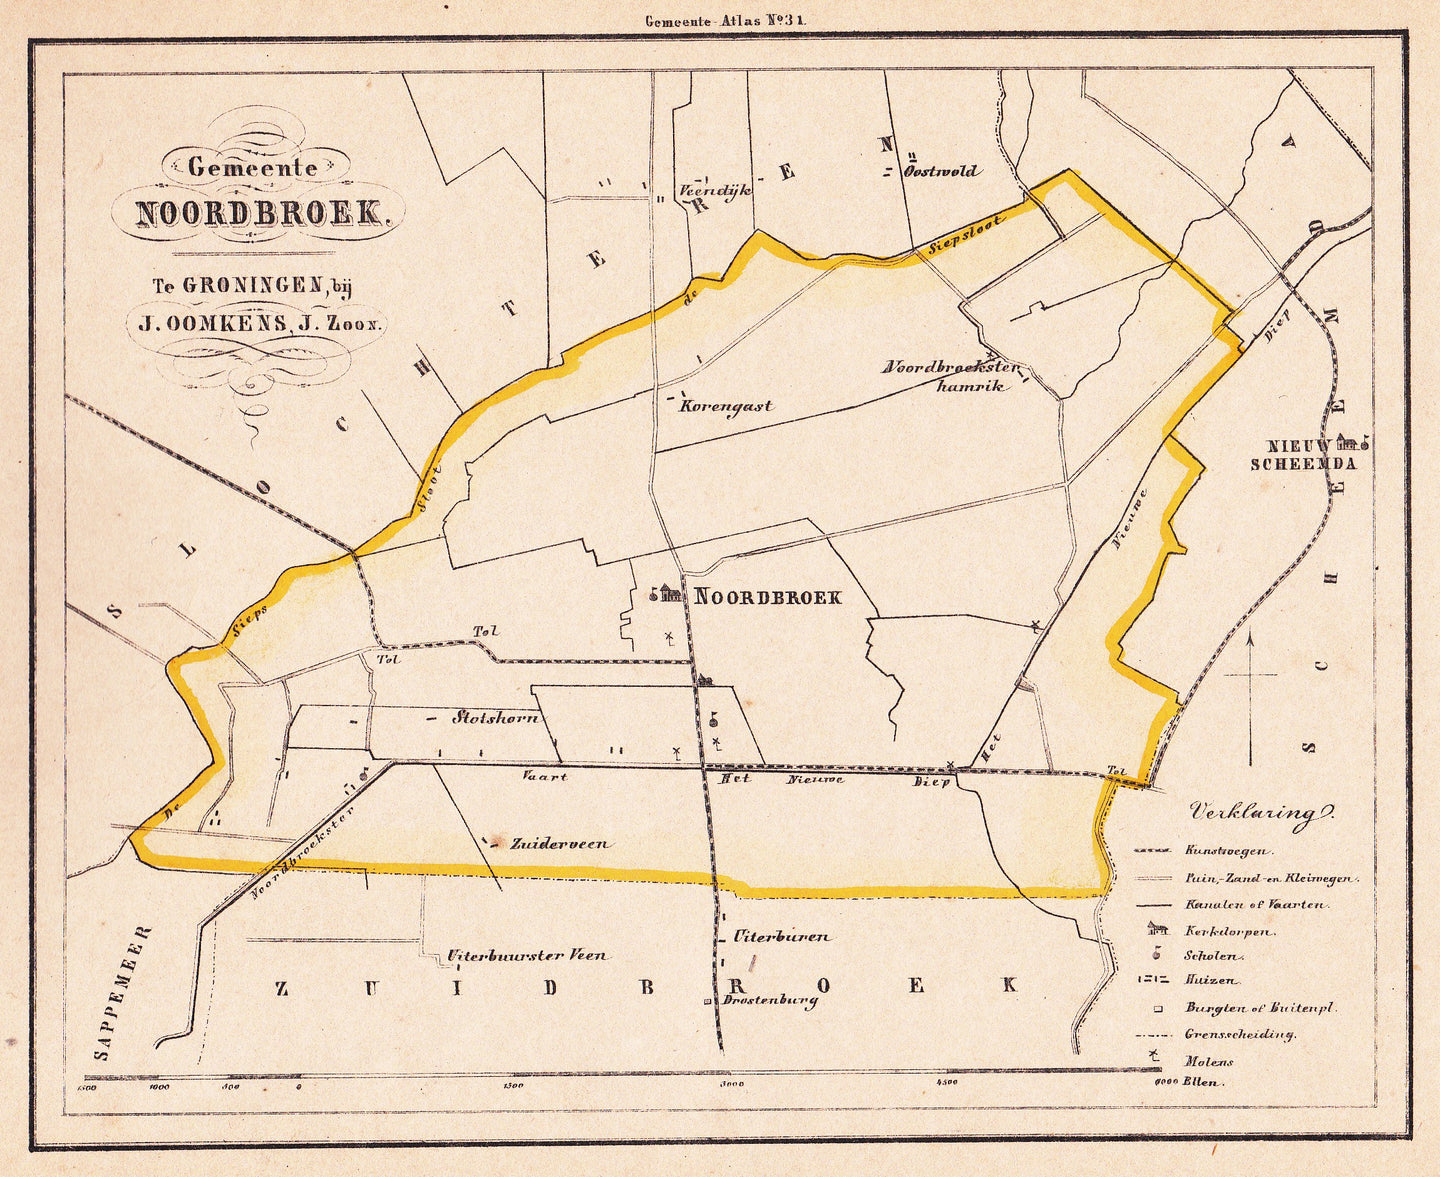 NOORDBROEK - C Fehse/J Oomkens Jzn - 1862